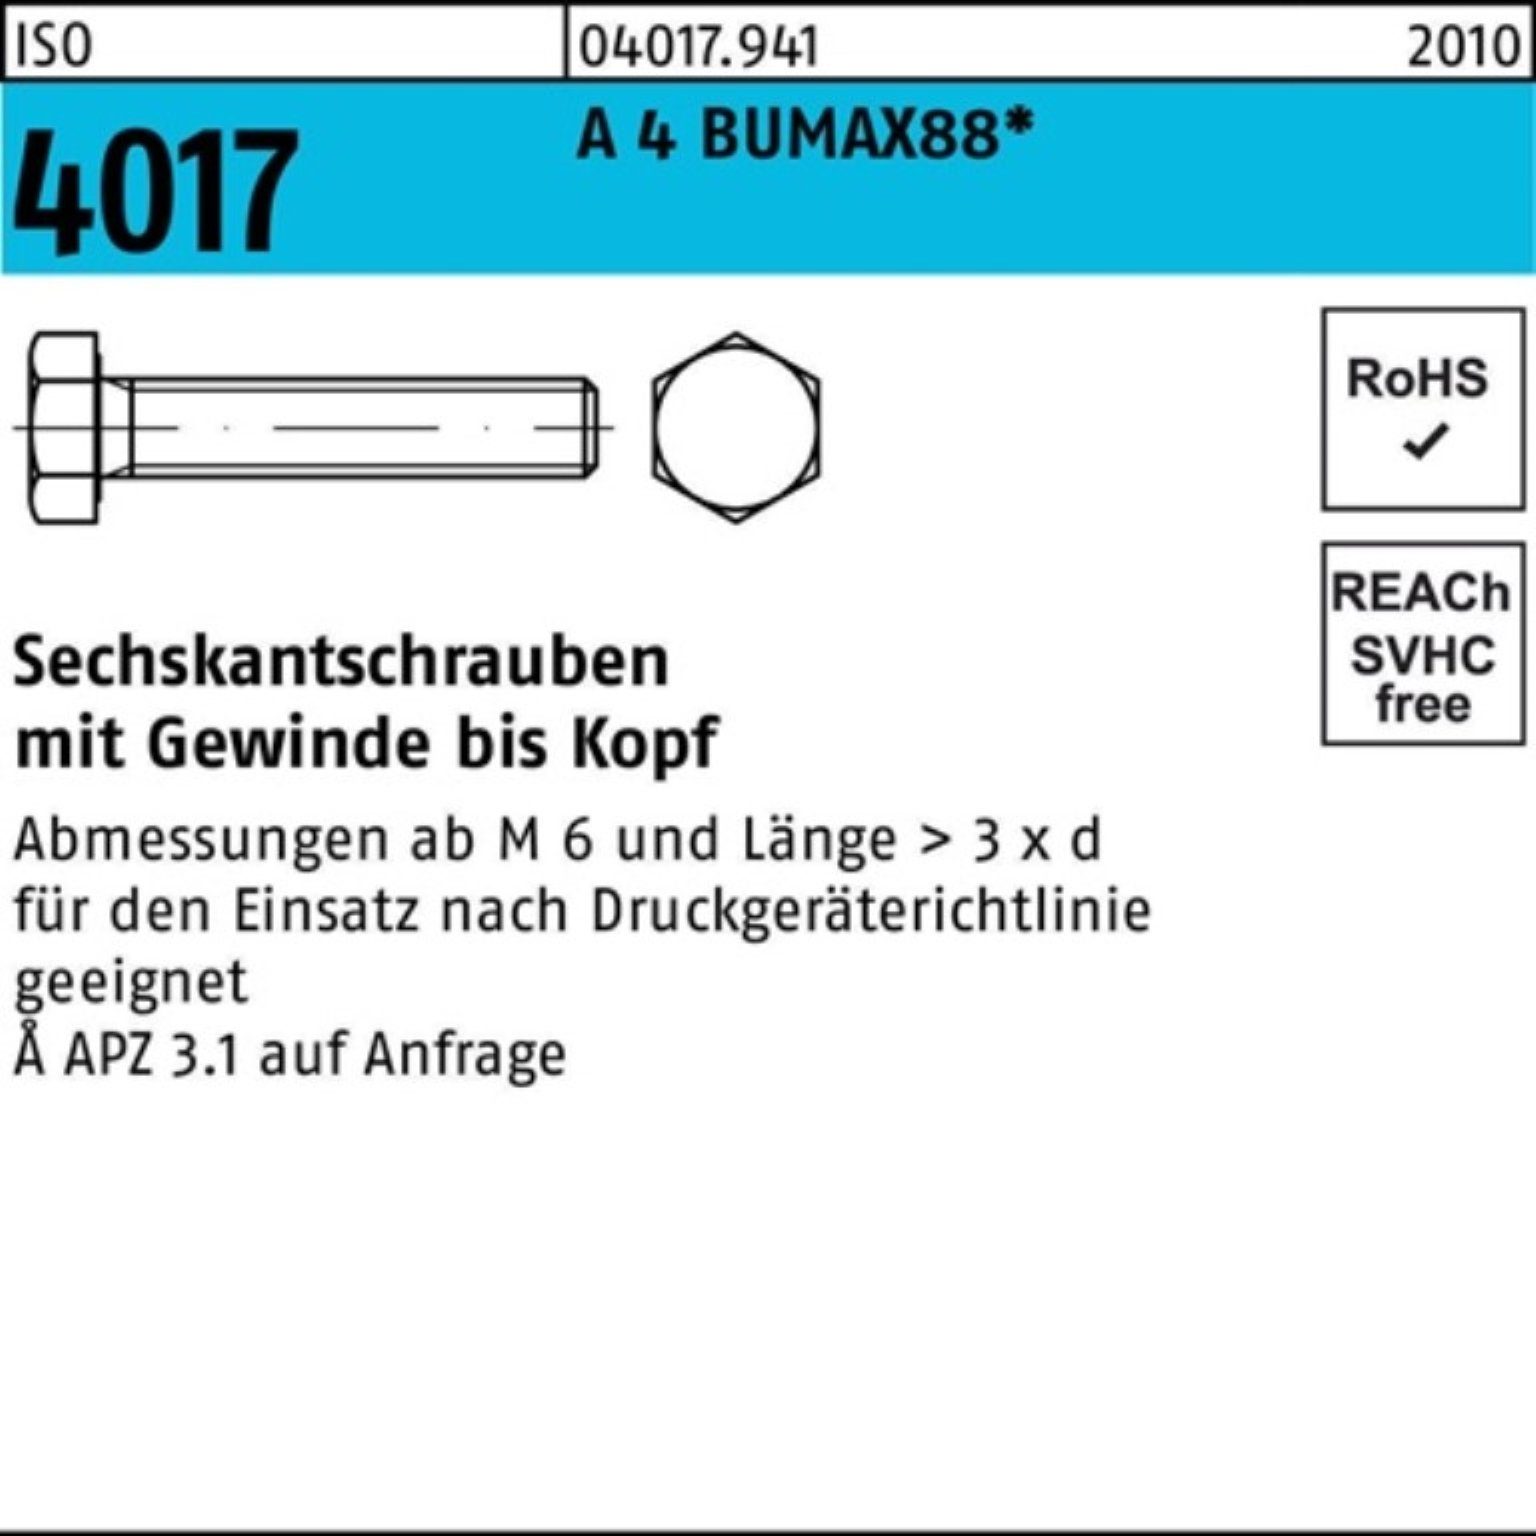 Stück 25 4017 VG Sechskantschraube BUMAX88 100er 50 A Bufab Pack 4 ISO M8x Sechskantschraube